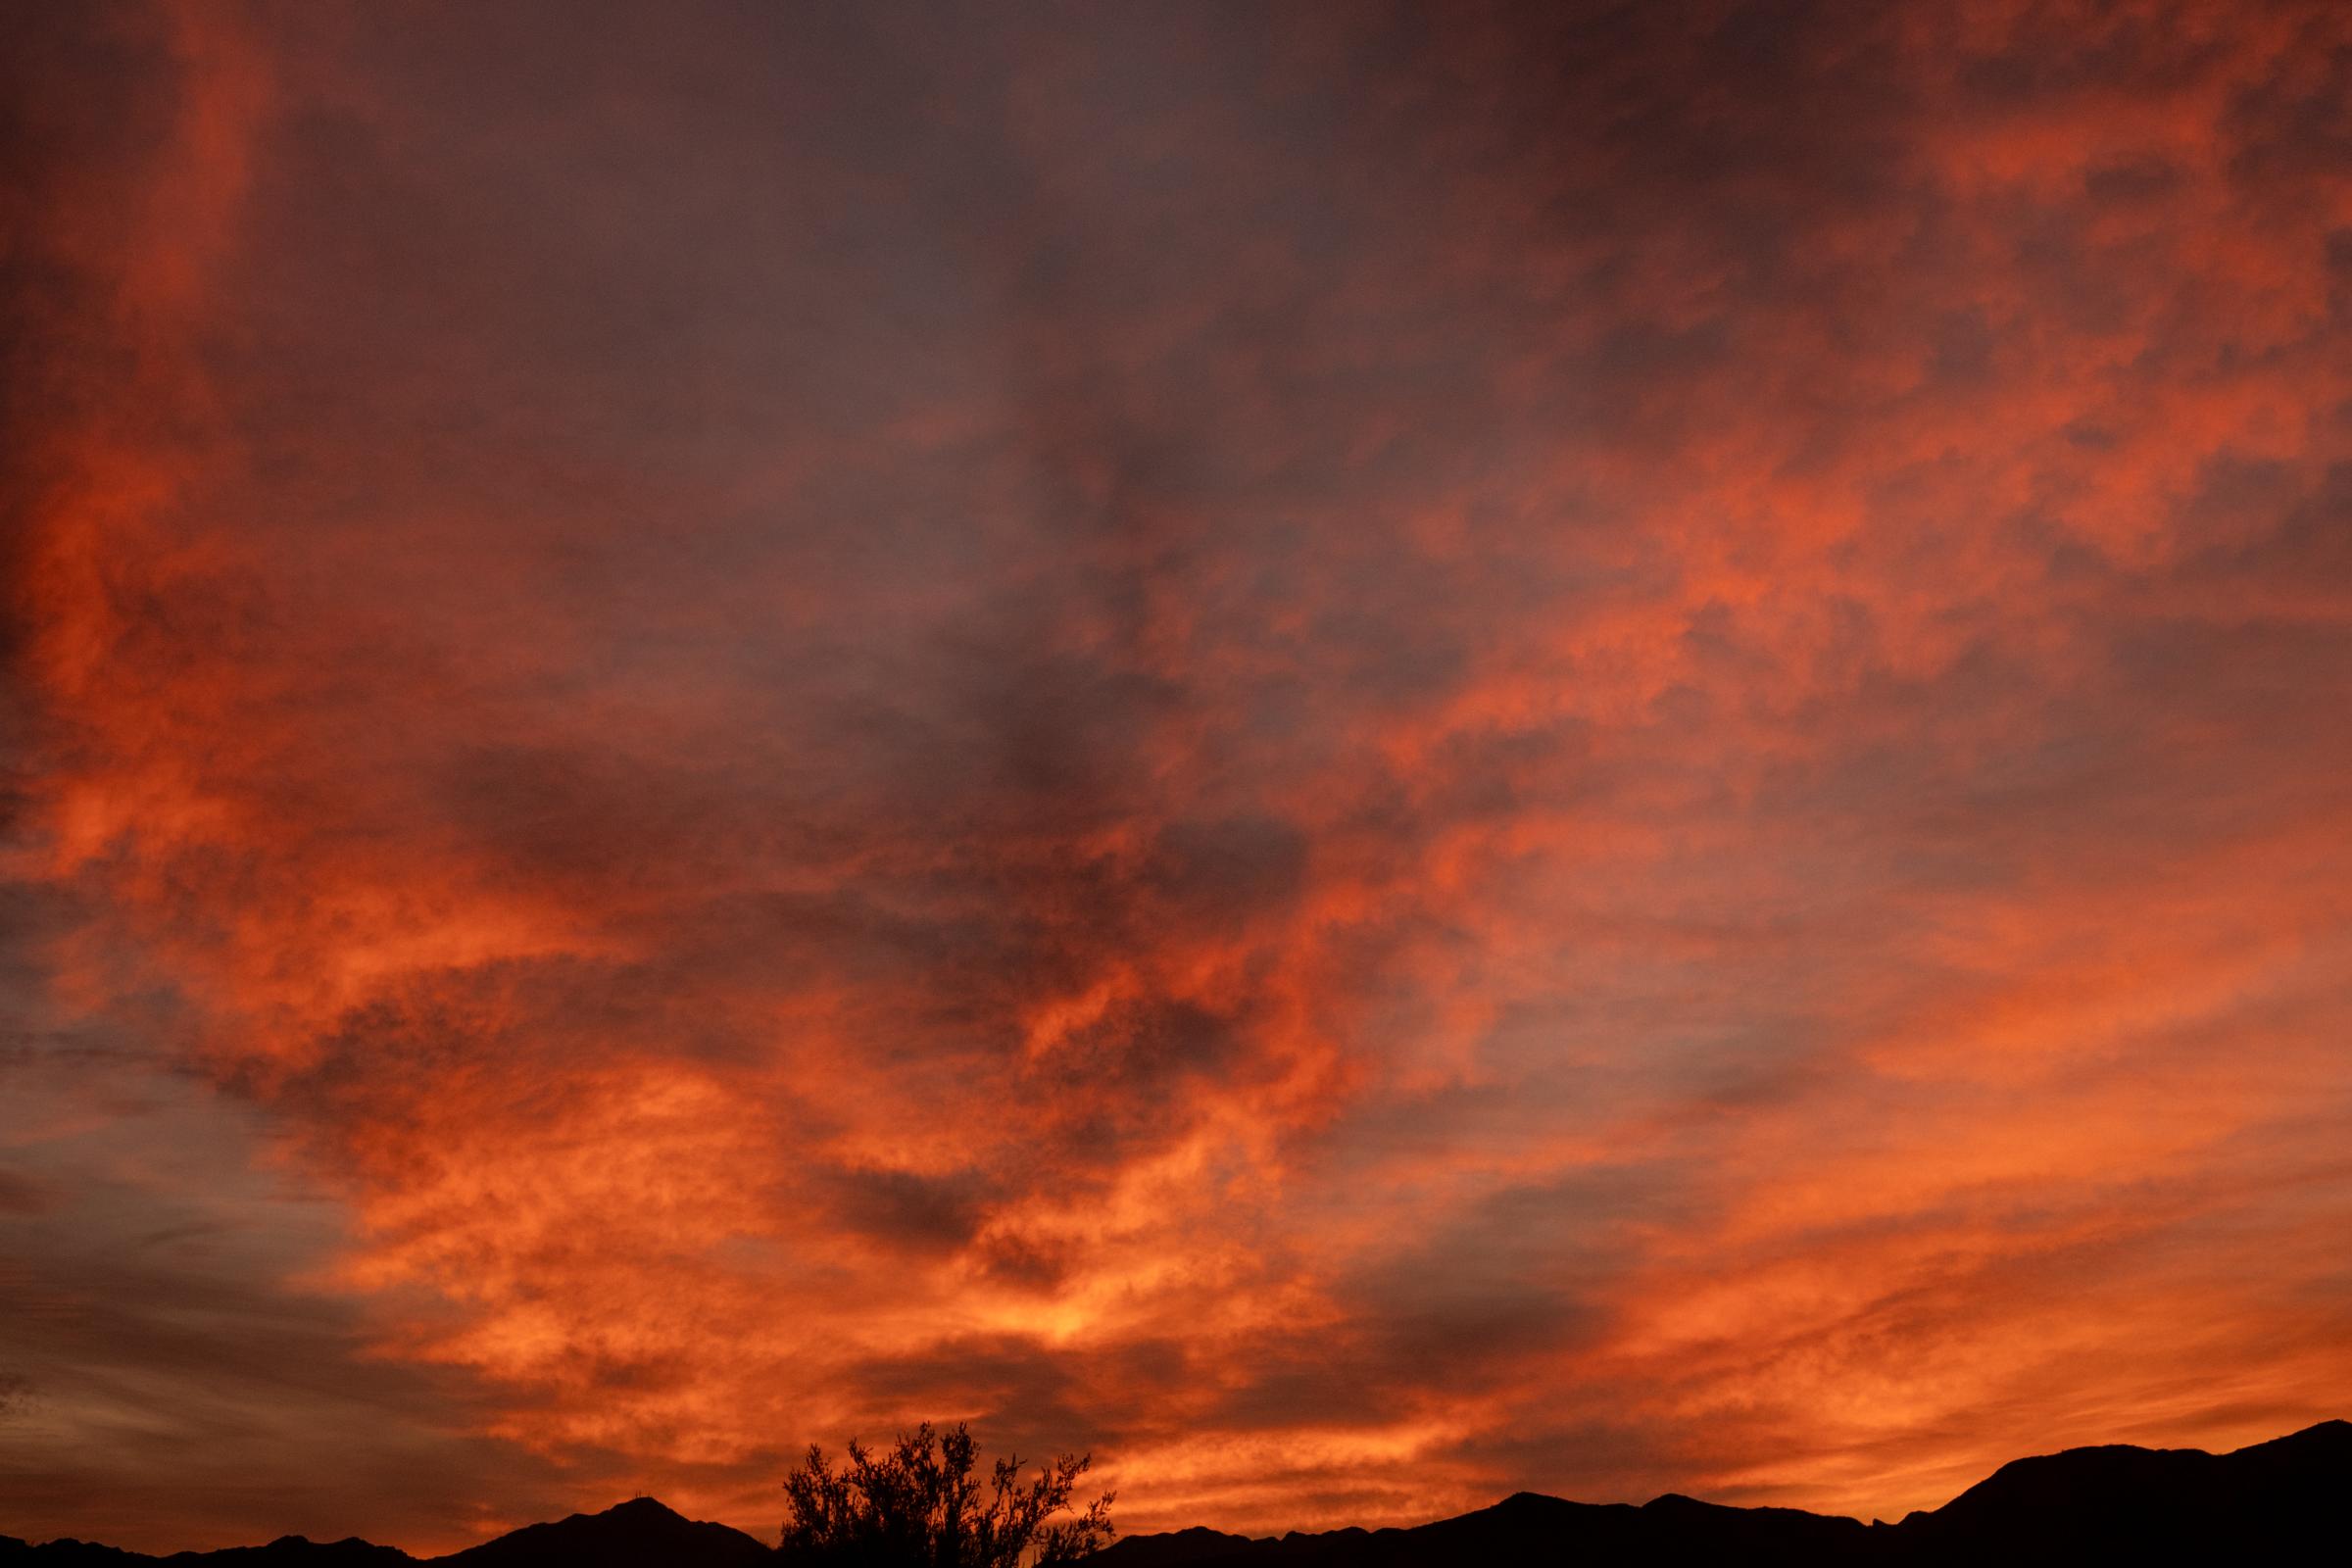 A Warm Winter (An Ongoing Journey) - Winter sunset. Quartzsite, Arizona.